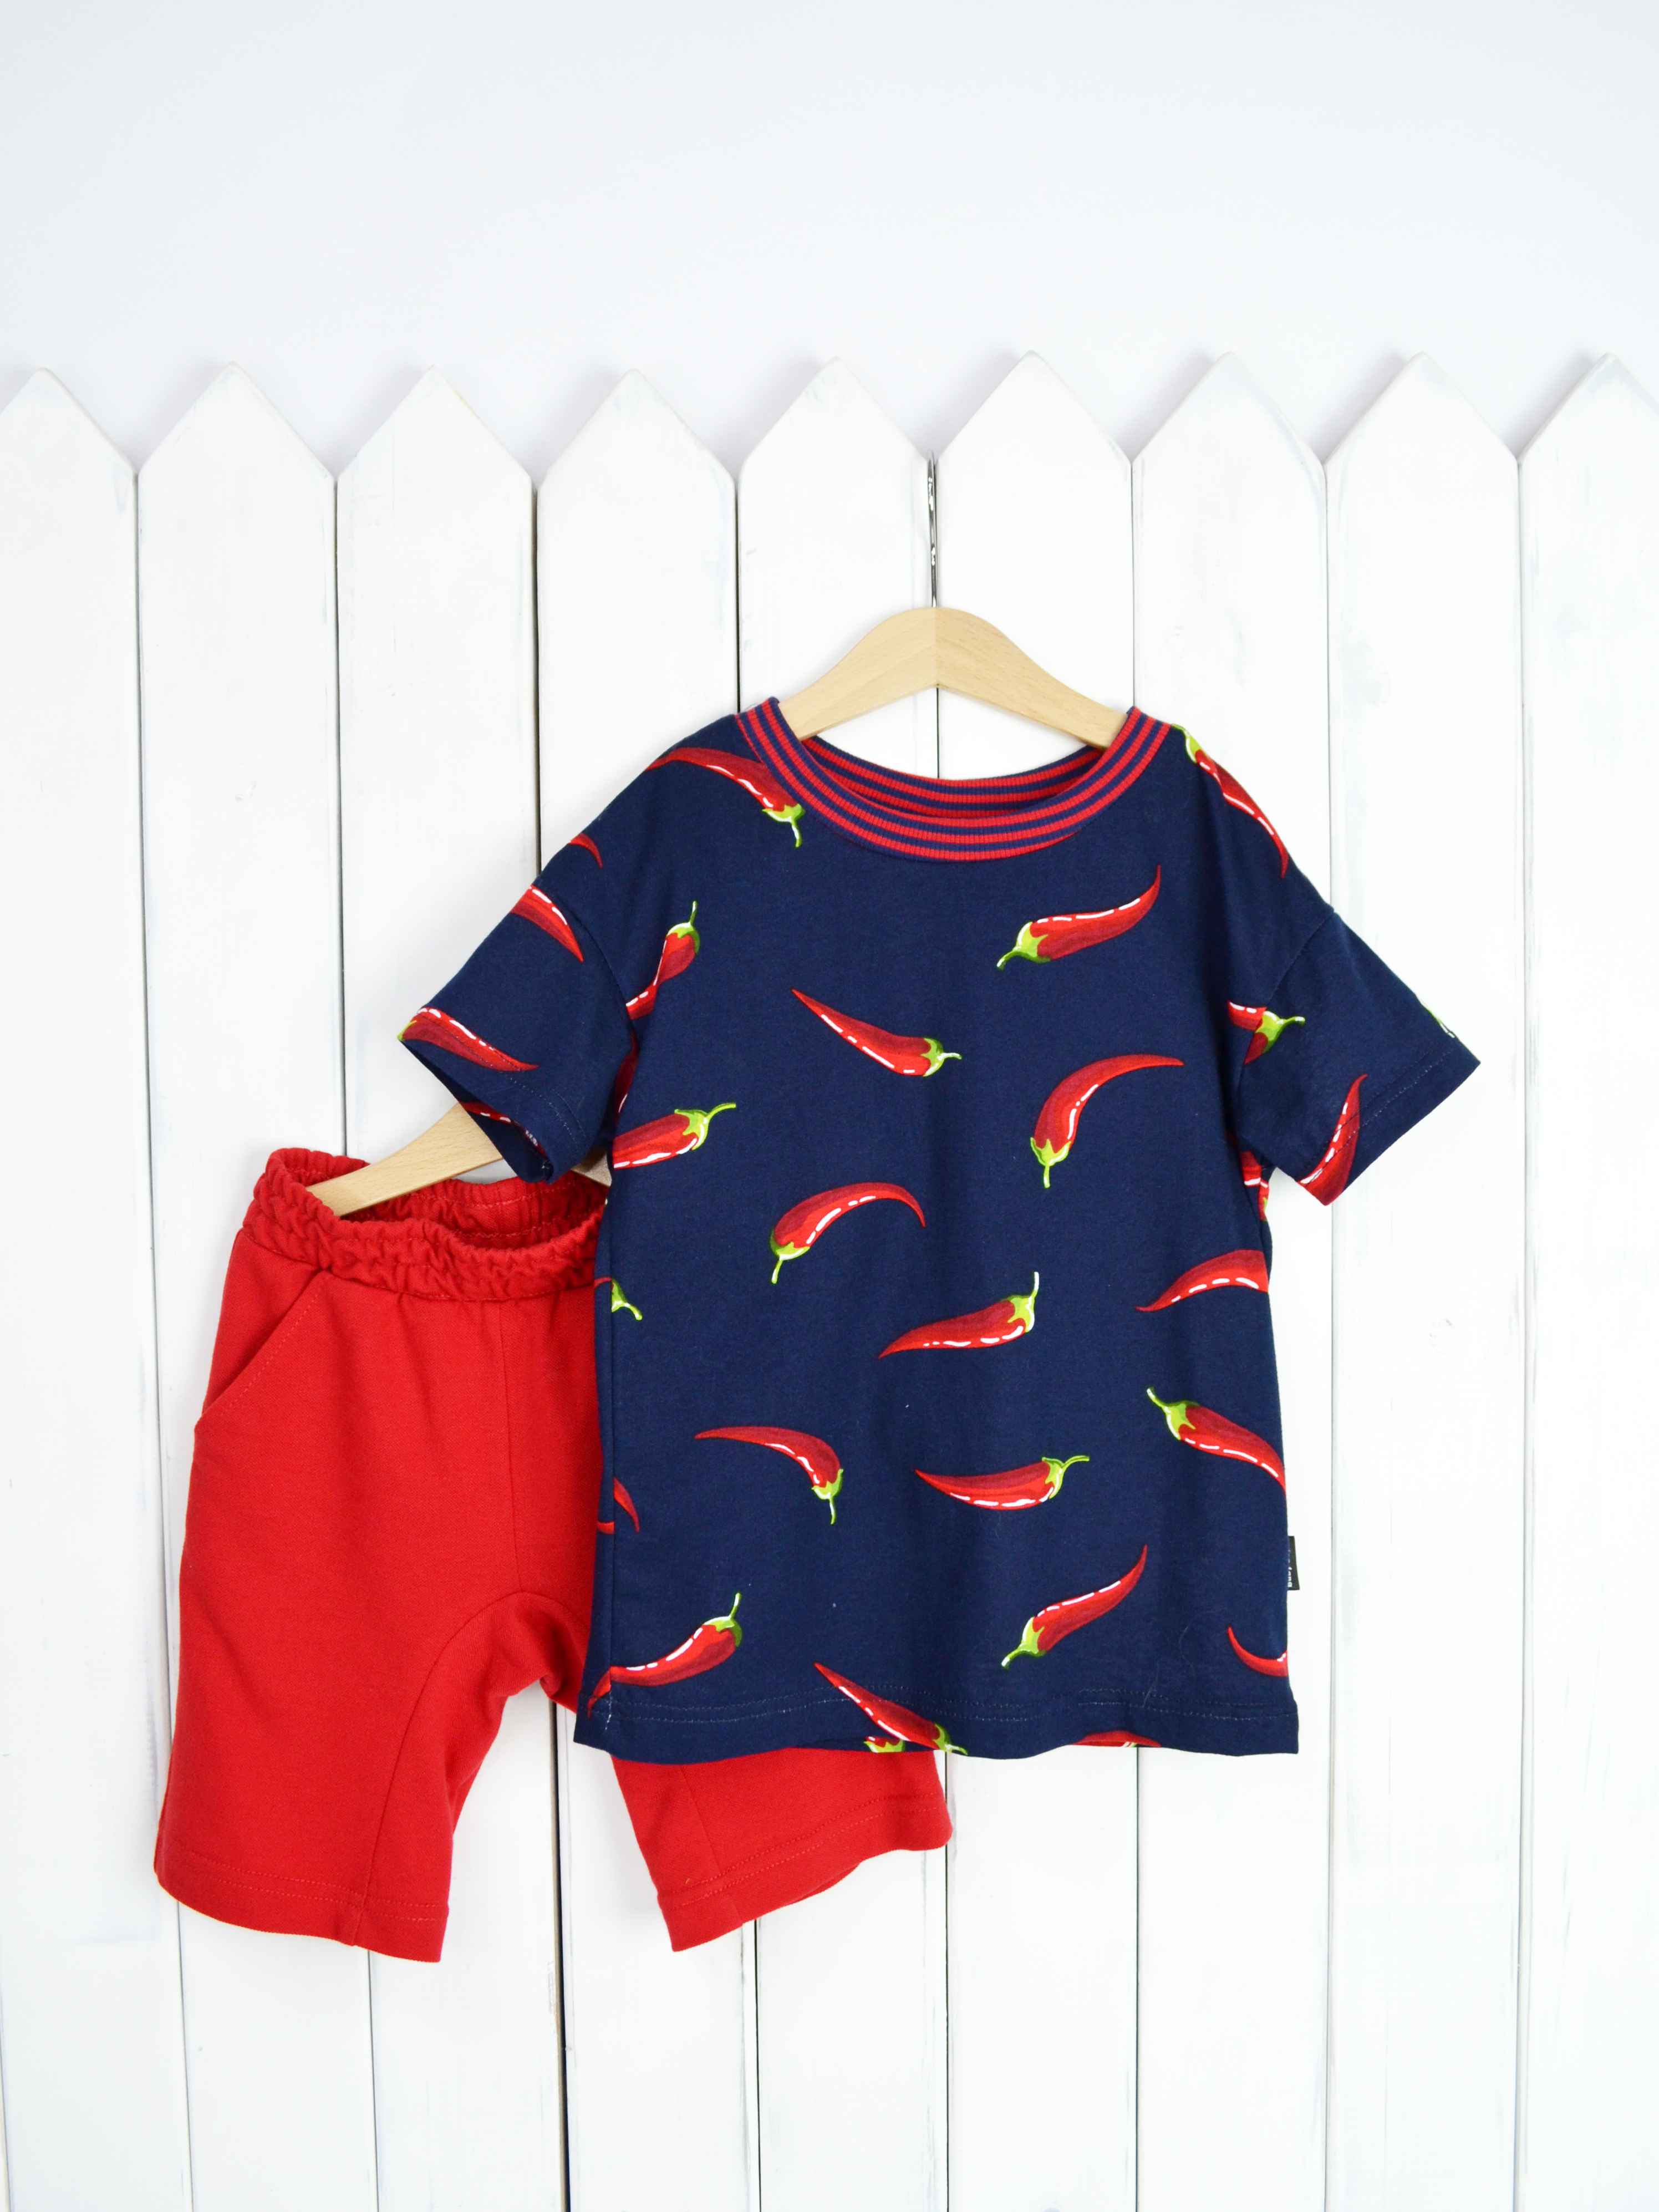 КД354/1-К Комплект детский р.122 Крутые перцы футболка+шорты/красное пике Бэби Бум